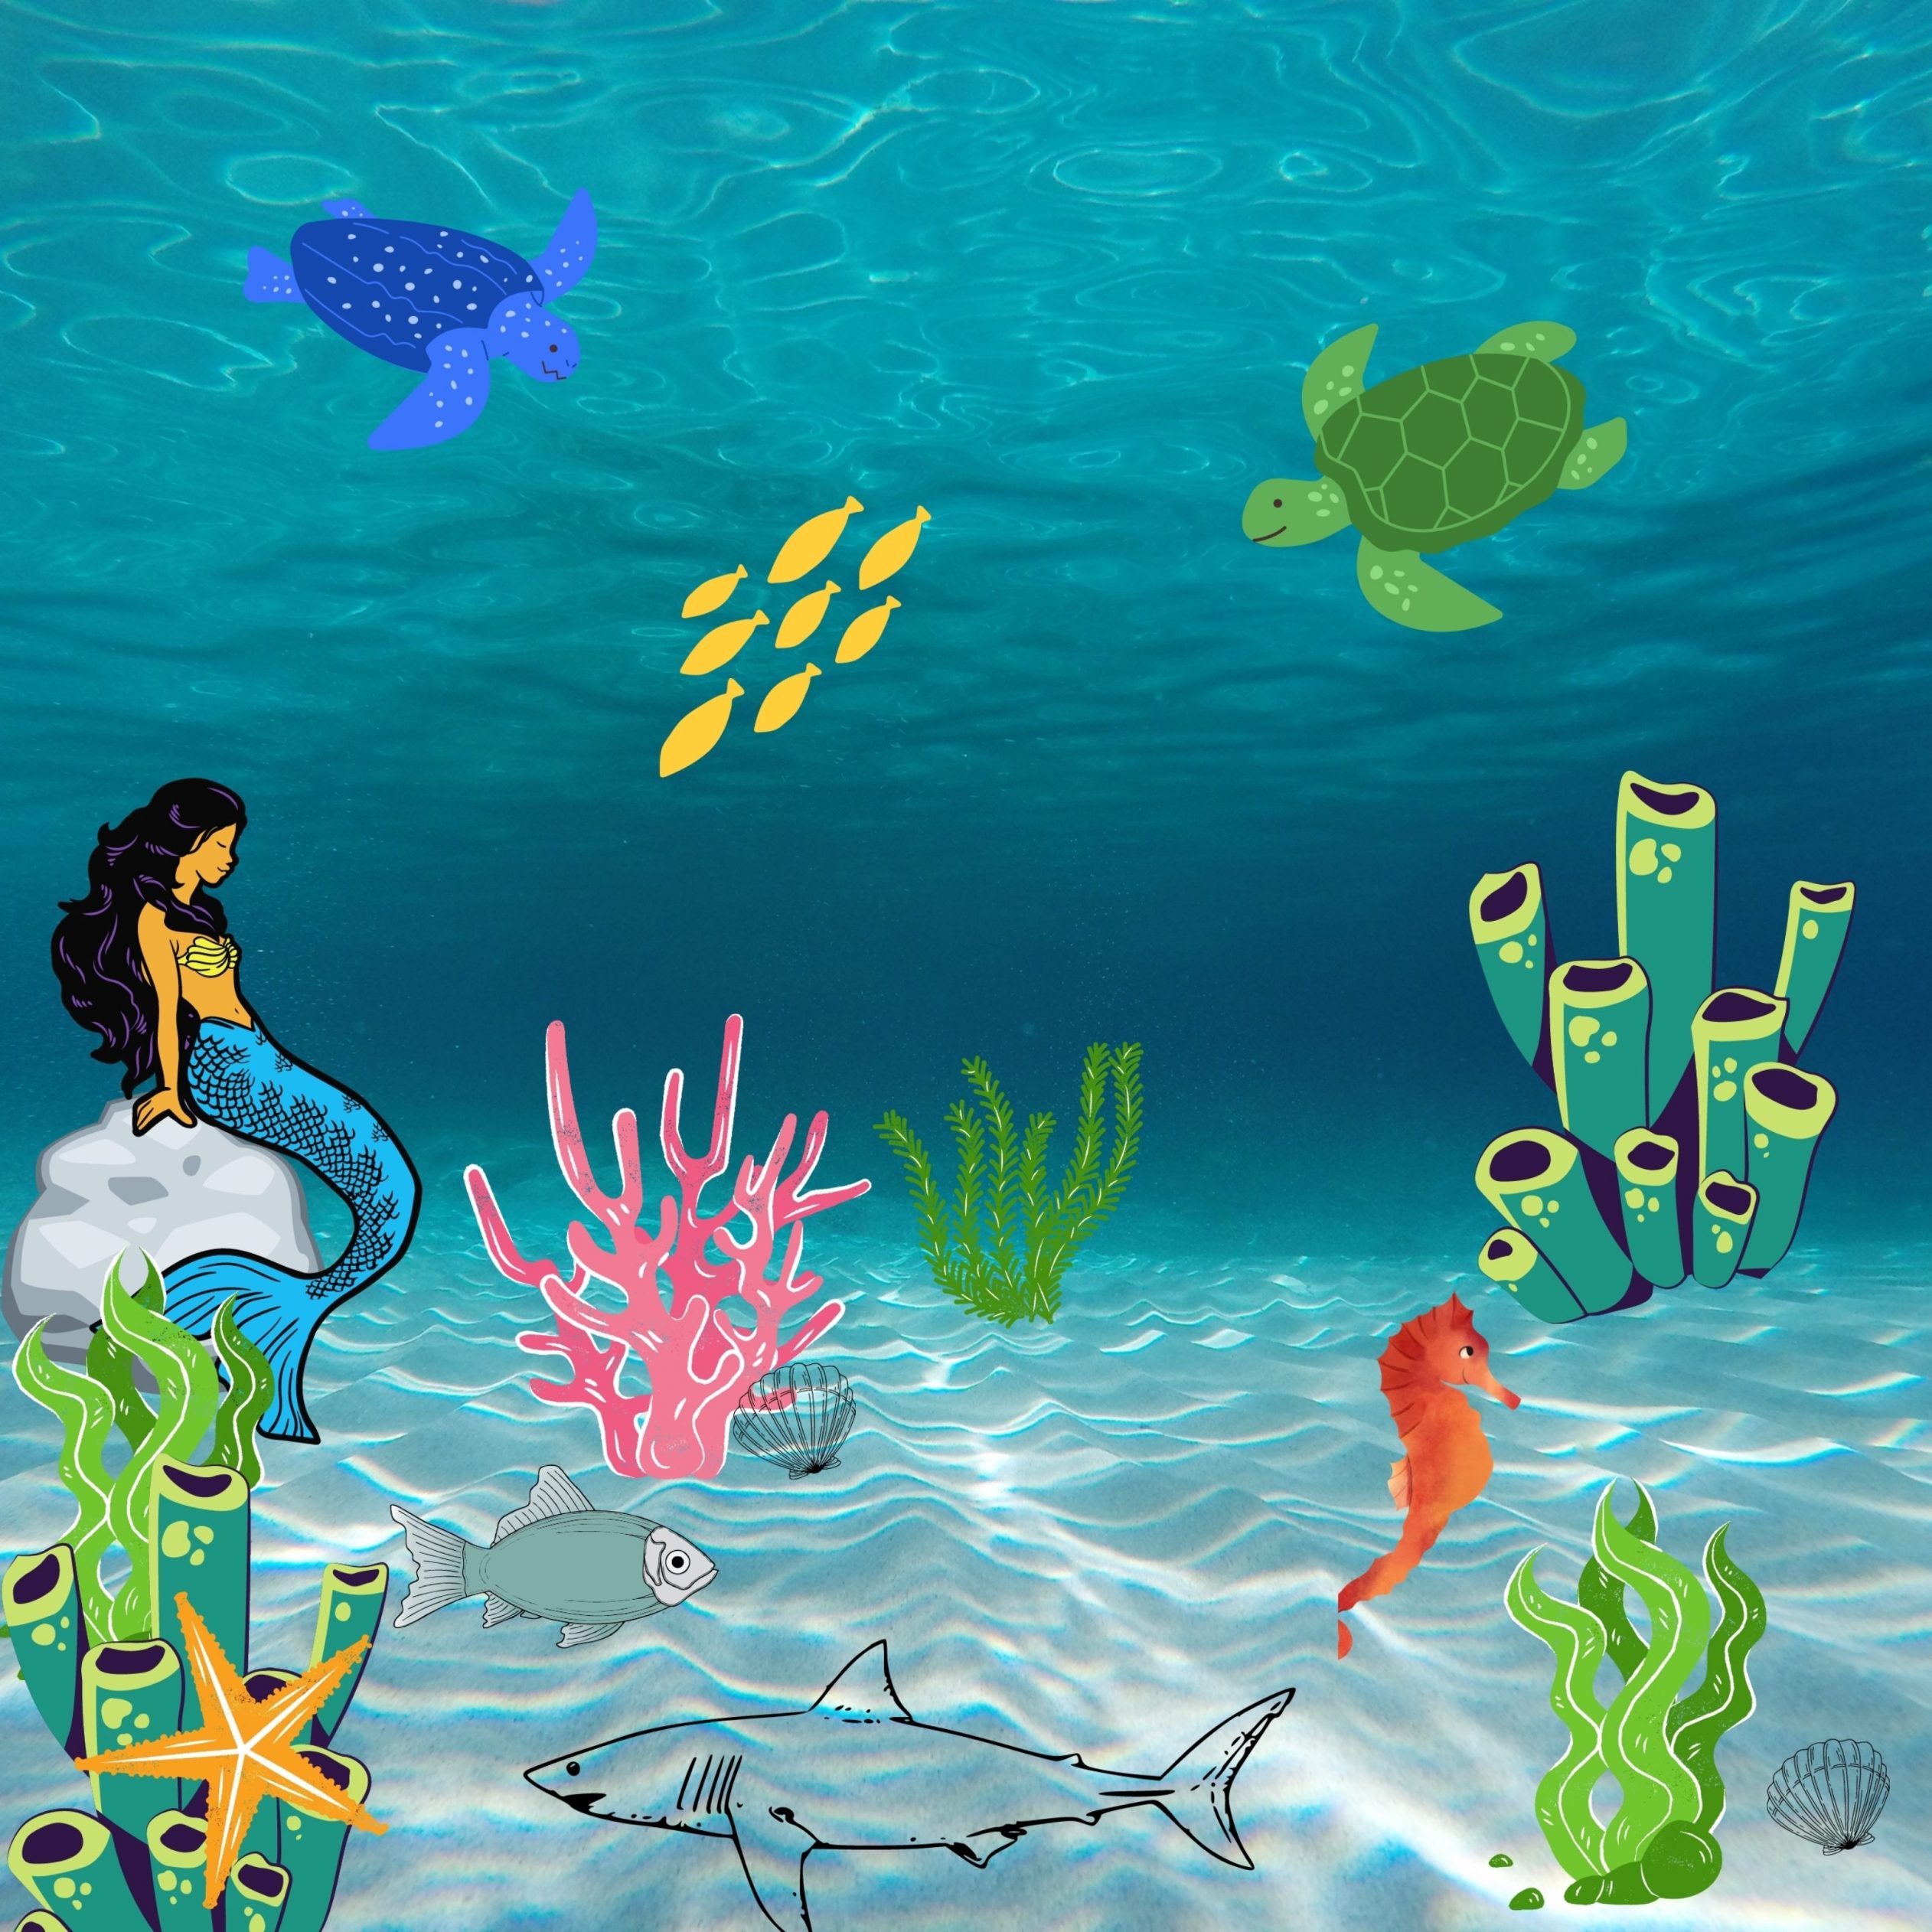 2524x2524 Parallax wallpaper 4k Underwater Creatures iPad Wallpaper 2524x2524 pixels resolution